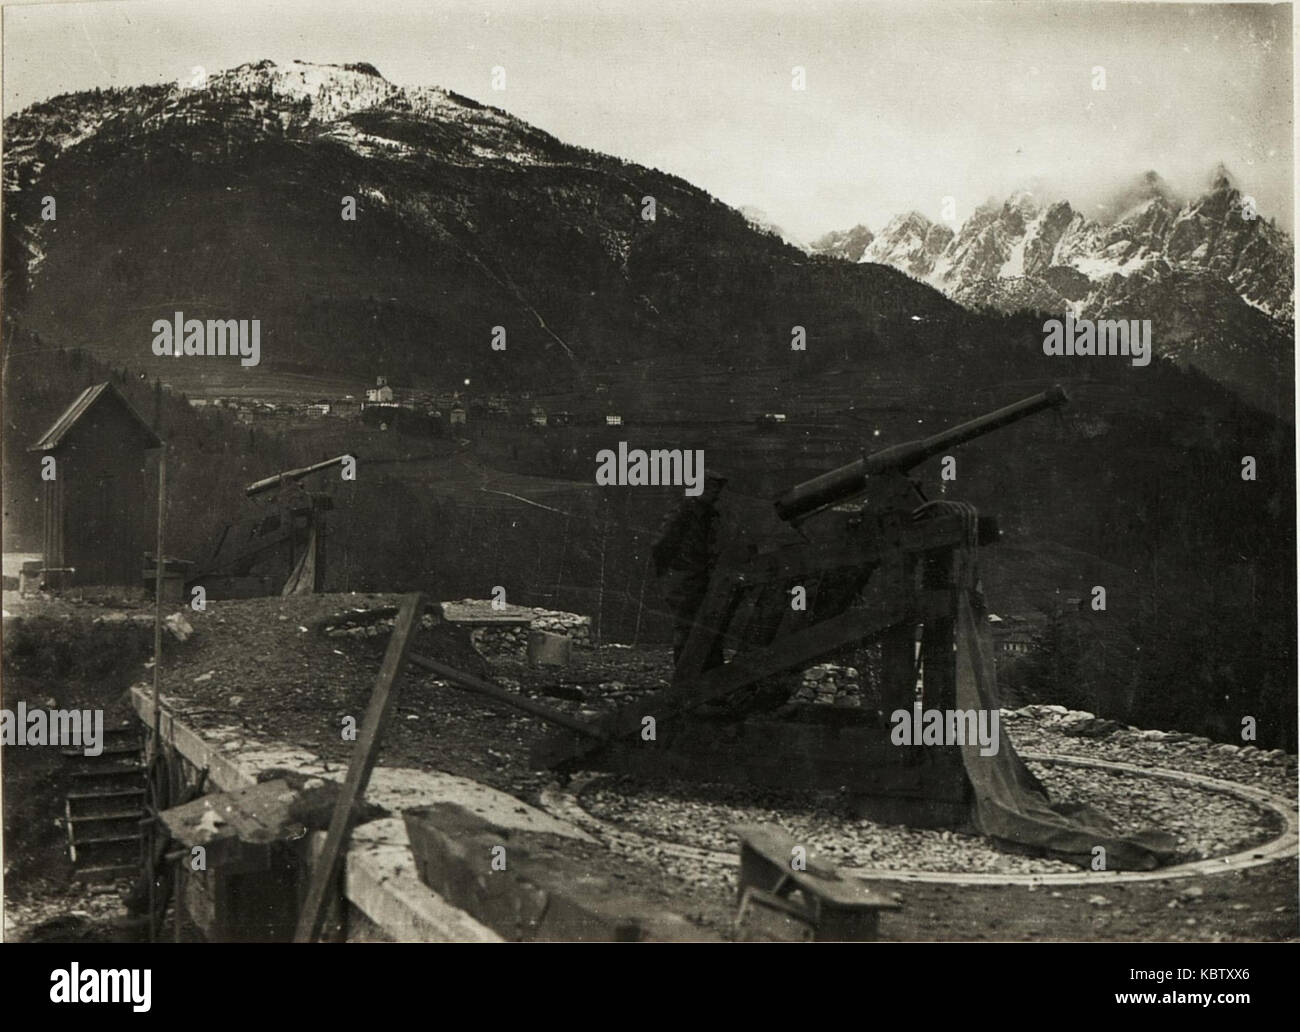 Pieve di Cadore, Fliegerabwehrkanone in einem Werk. (BildID) 15416430 Stockfoto